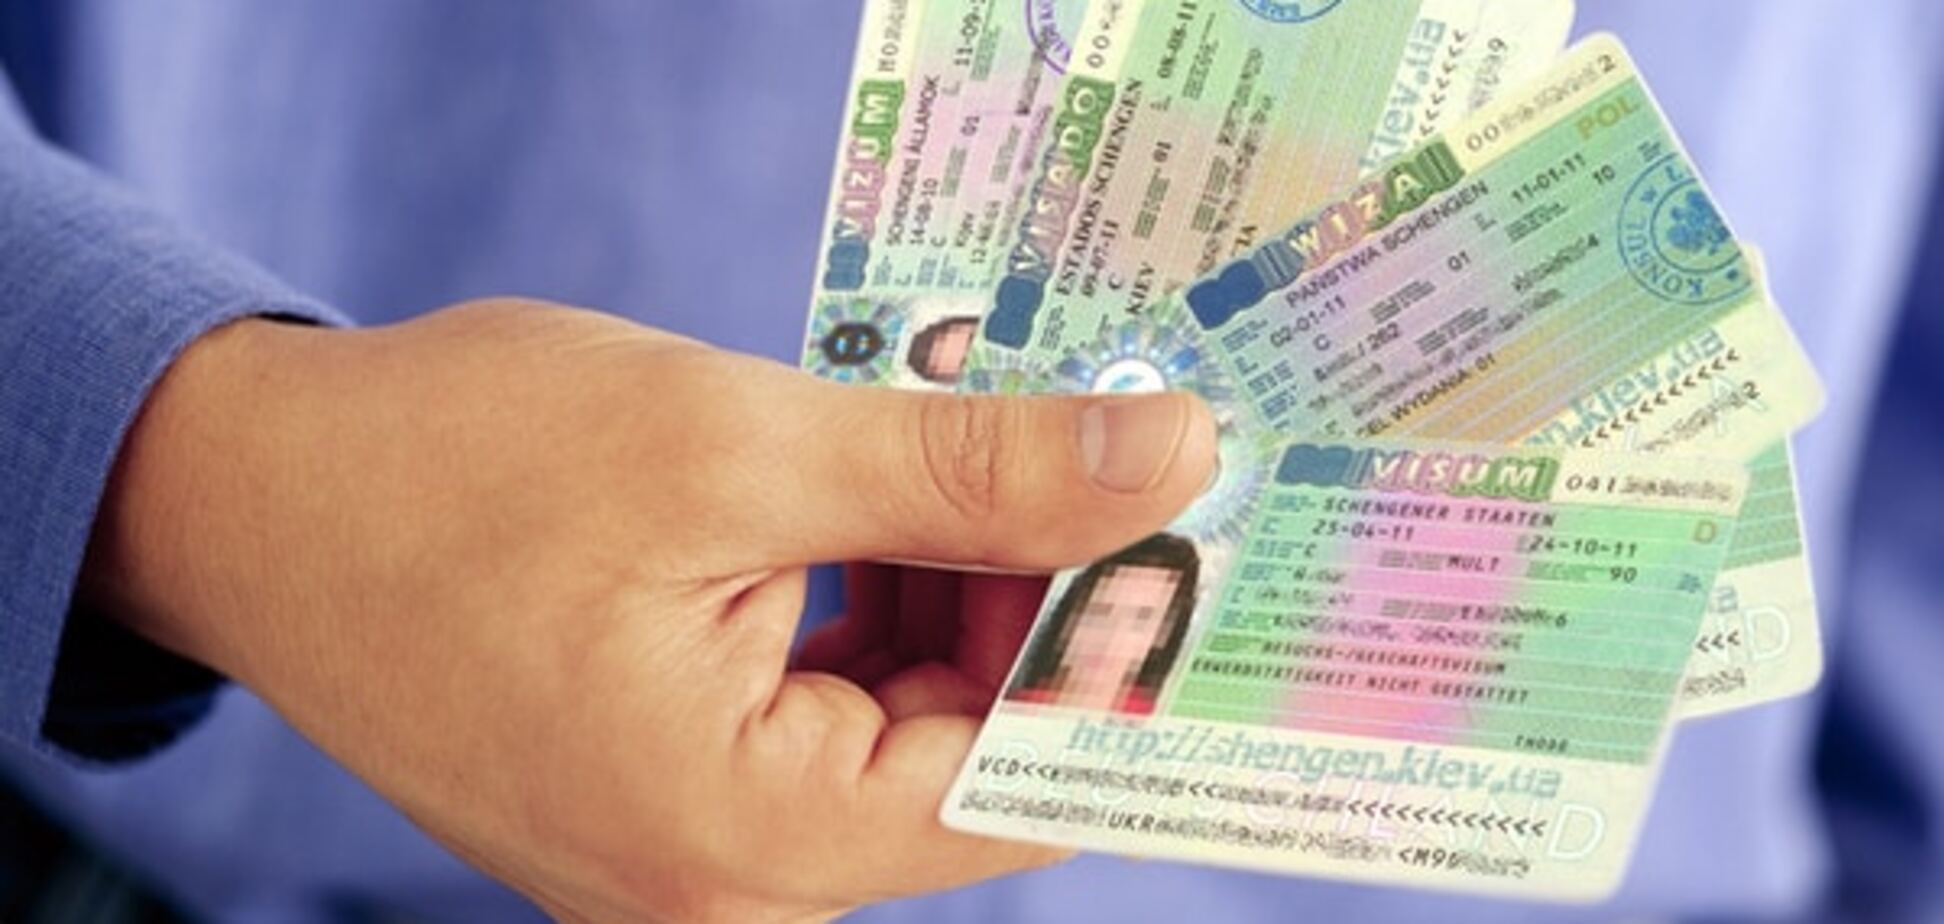 Як українцю самому отримати шенгенську візу: поради експерта